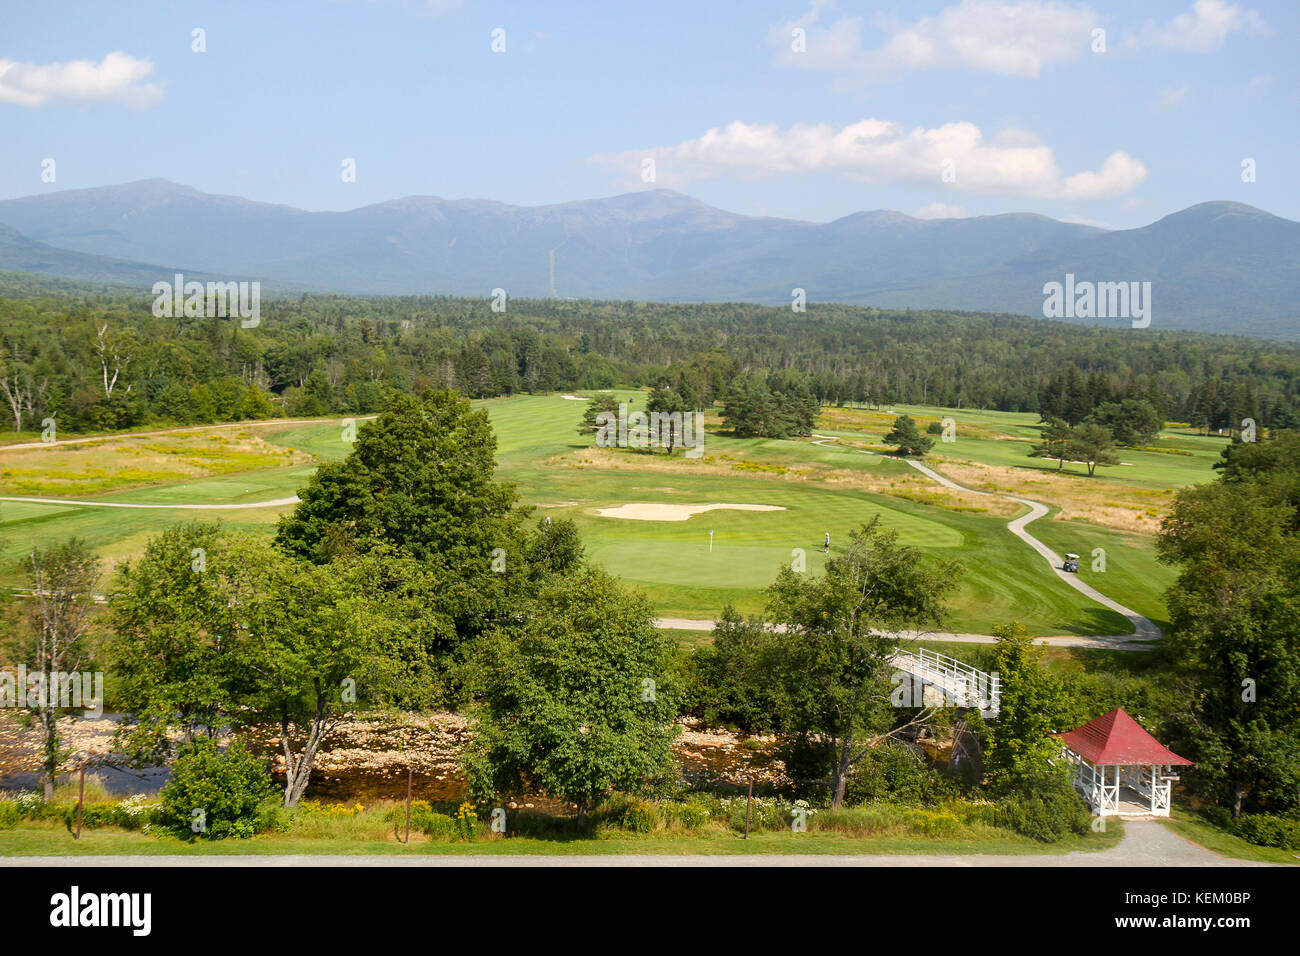 Vista al campo de golf y a las montañas detrás de la omni Resort Mount Washington, en Bretton Woods, New Hampshire, Estados Unidos Foto de stock